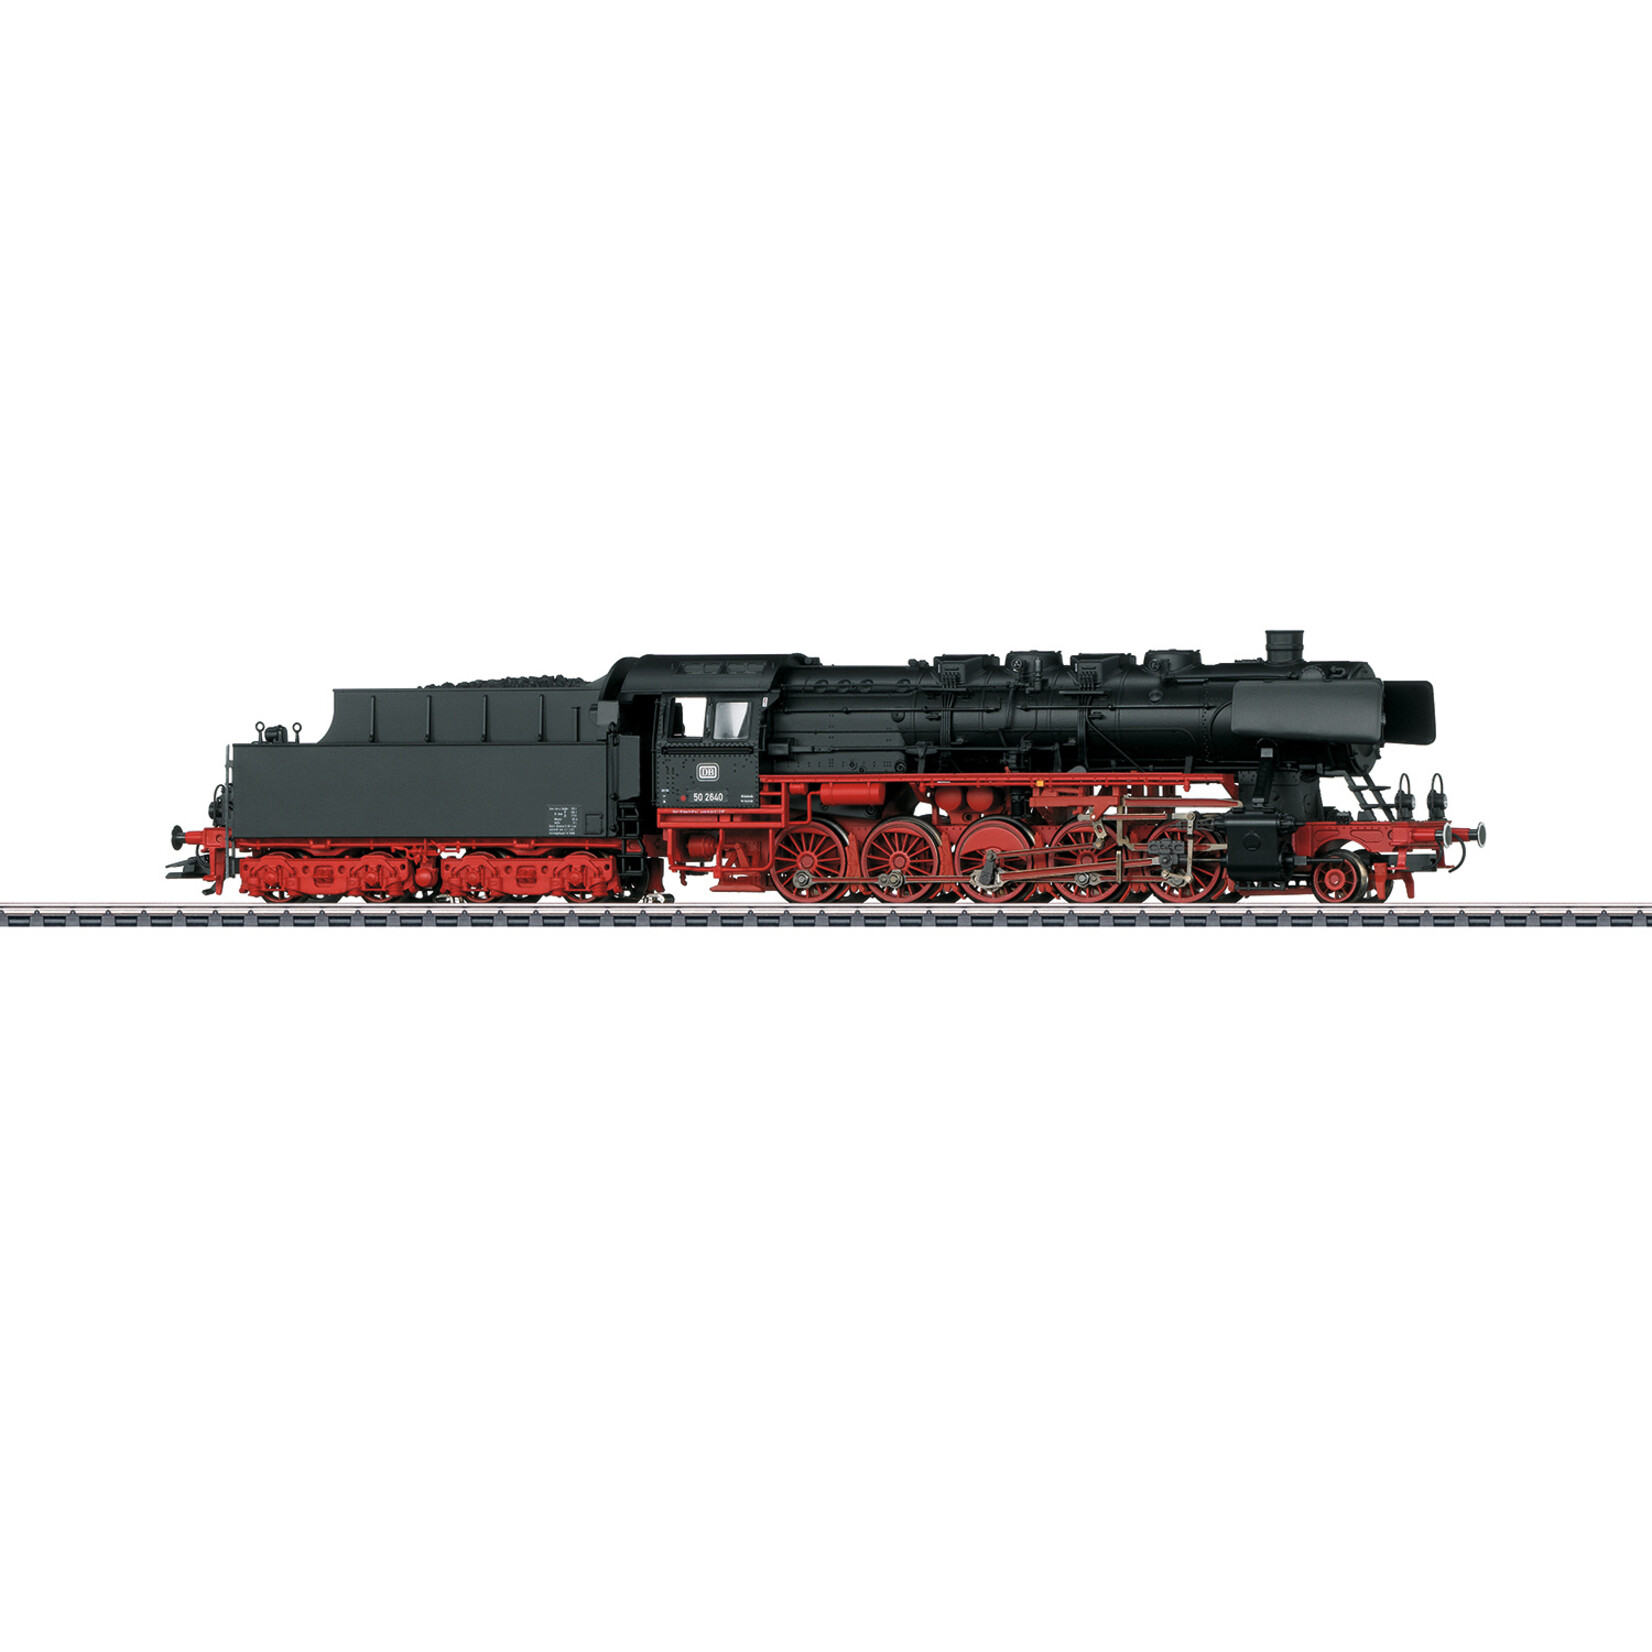 Märklin Märklin Classics 37897 cl 50 steam loco DB ep. III